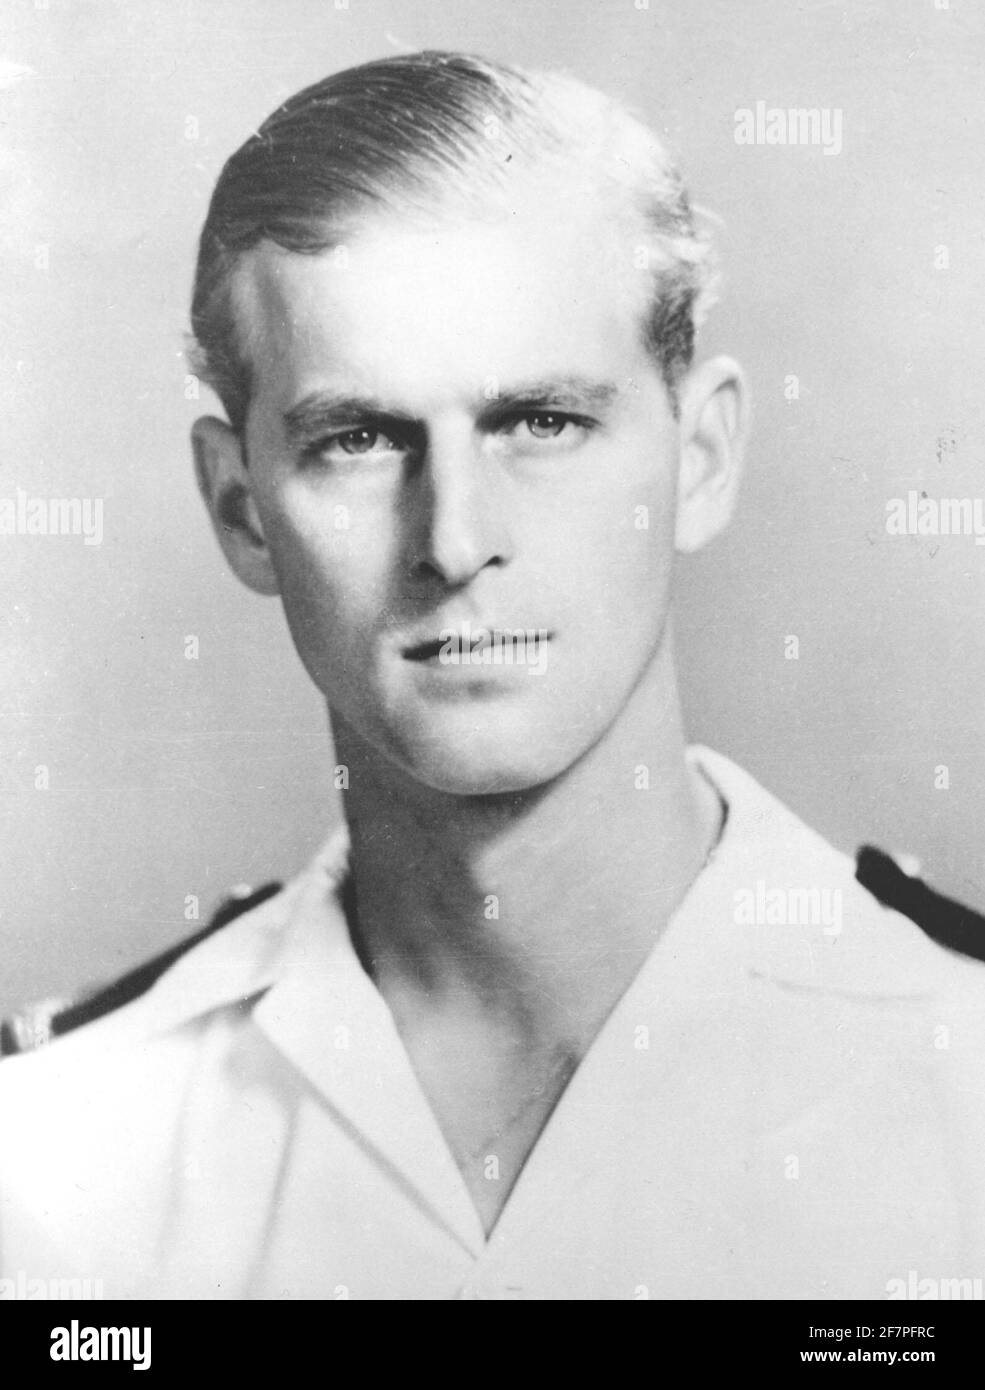 Photo du dossier datée du 01/05/51 du duc d'Édimbourg en tant que commandant de la frégate HMS Magpie en 1951. Philip a rejoint la Marine après avoir quitté l'école et, en mai 1939, il s'est inscrit au Royal Naval College de Dartmouth, où il a été désigné comme meilleur cadet. Il a rapidement augmenté à travers les rangs, gagnant la promotion après la promotion, mais sa vie a été de prendre un cours très différent. La carrière navale florissante de dukeÕs a pris fin prématurément en 1951. Philip s'est retiré de son rôle actif dans les forces pour remplir son devoir de consort. Date de publication : vendredi 4 avril 2021. Banque D'Images